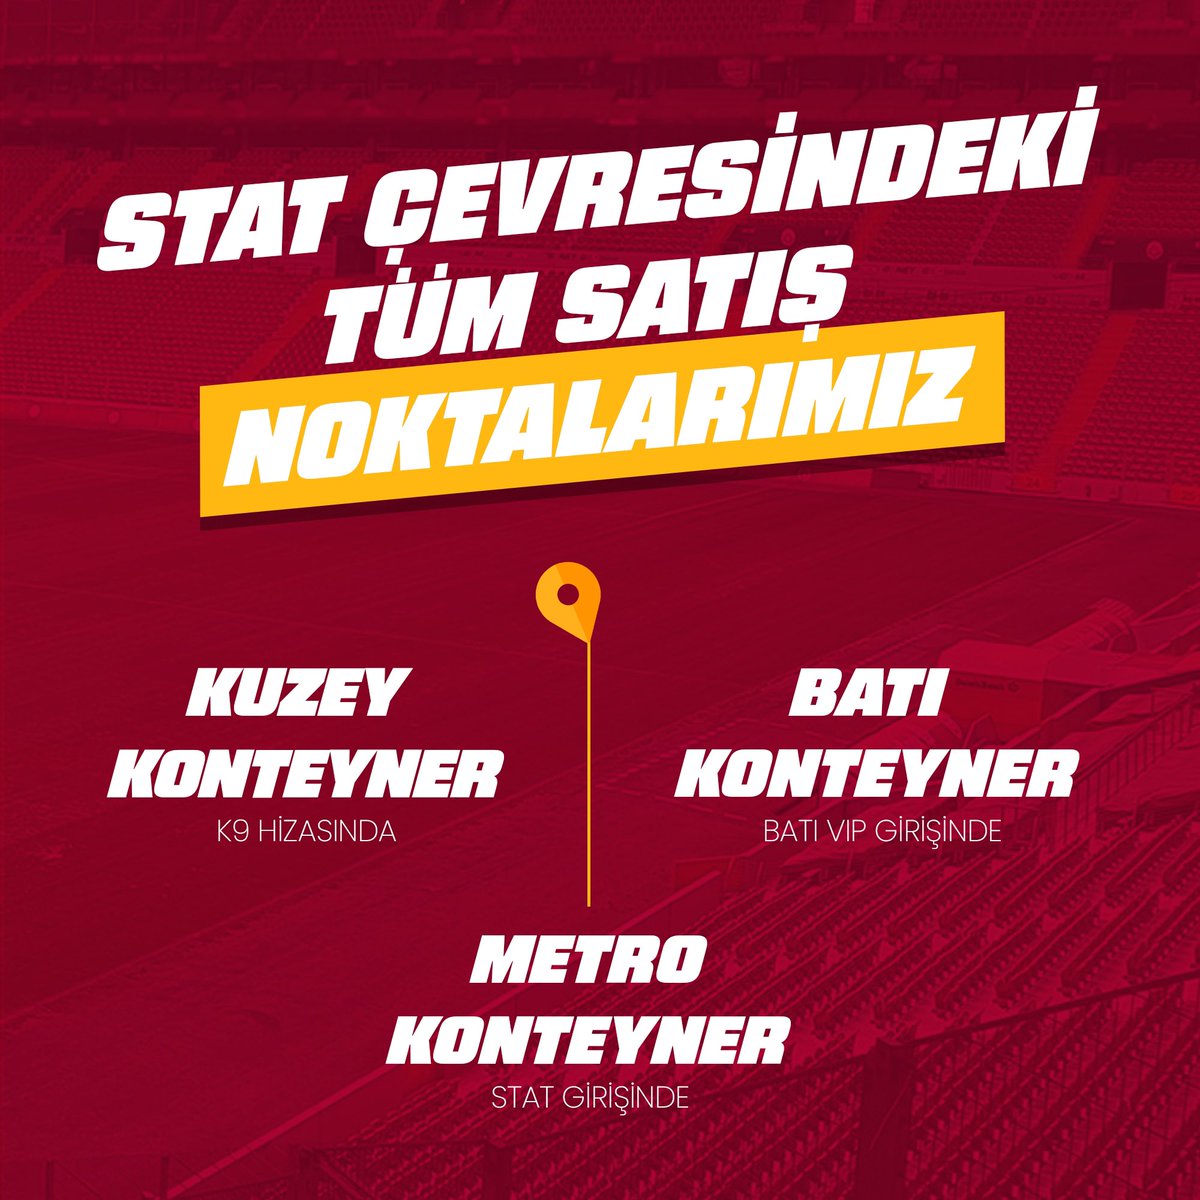 #BirlikteHerYerdeyiz 🫶

Galatasaray-Fenerbahçe karşılaşmasına özel bugün Galatasaray tutkusunu tüm taraftarlarımızla buluşturuyoruz! 💪

Stat çevresindeki tüm satış noktalarımız:

📍Aslantepe GSStore
📍Doğu ve Batı VIP Alanı GSStore’lar
📍Güney 88 Giriş GSStore Kioks 
📍Doğu ve